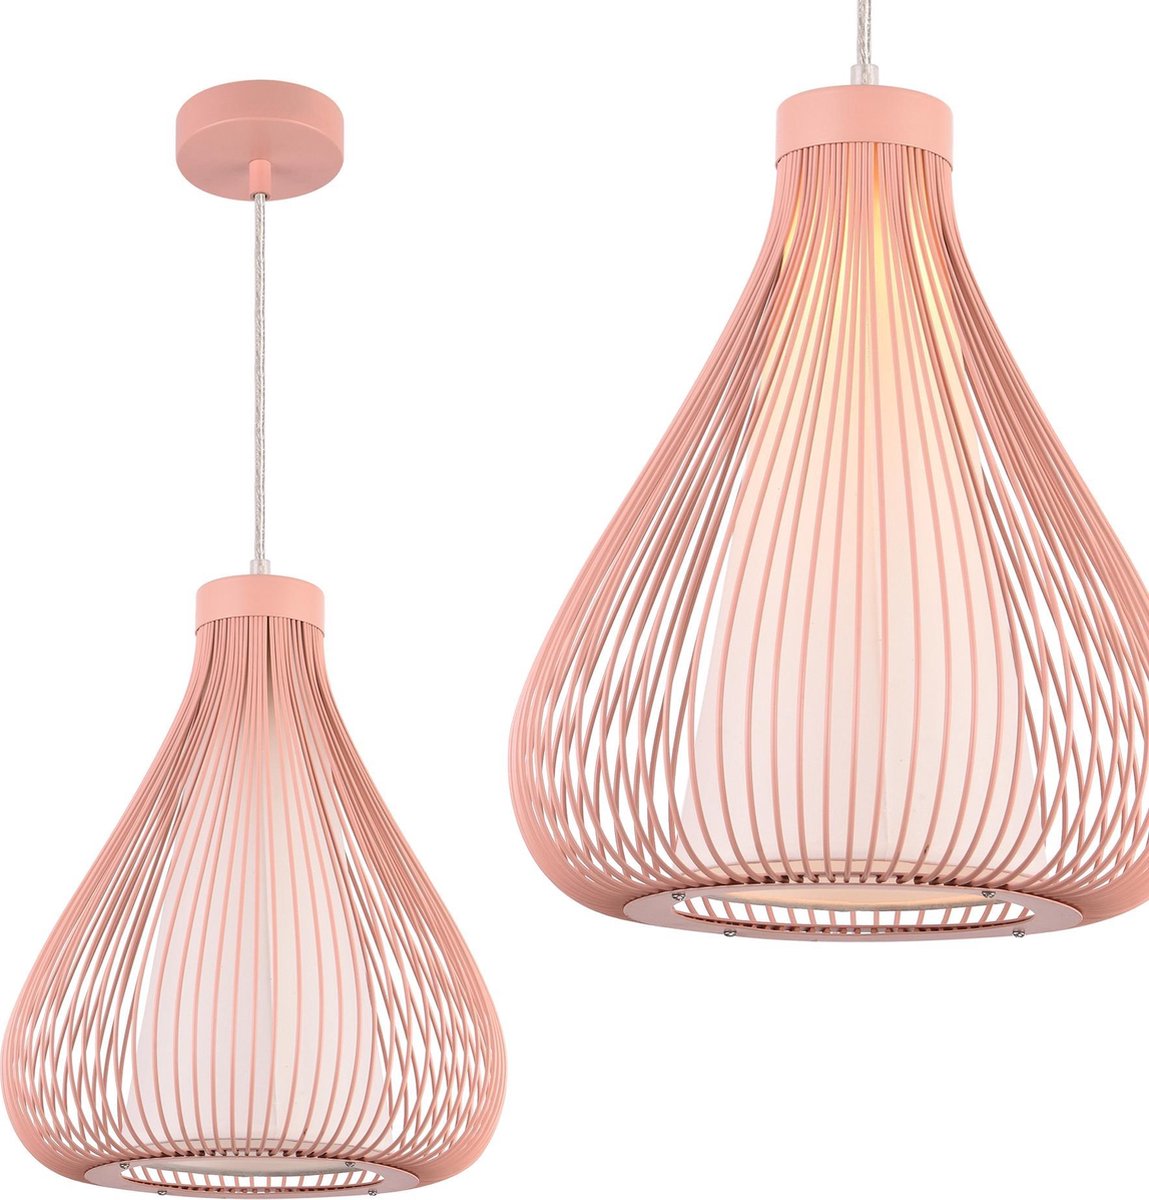 lux.pro]® Decoratieve design hanglamp Miami - rose goud | bol.com